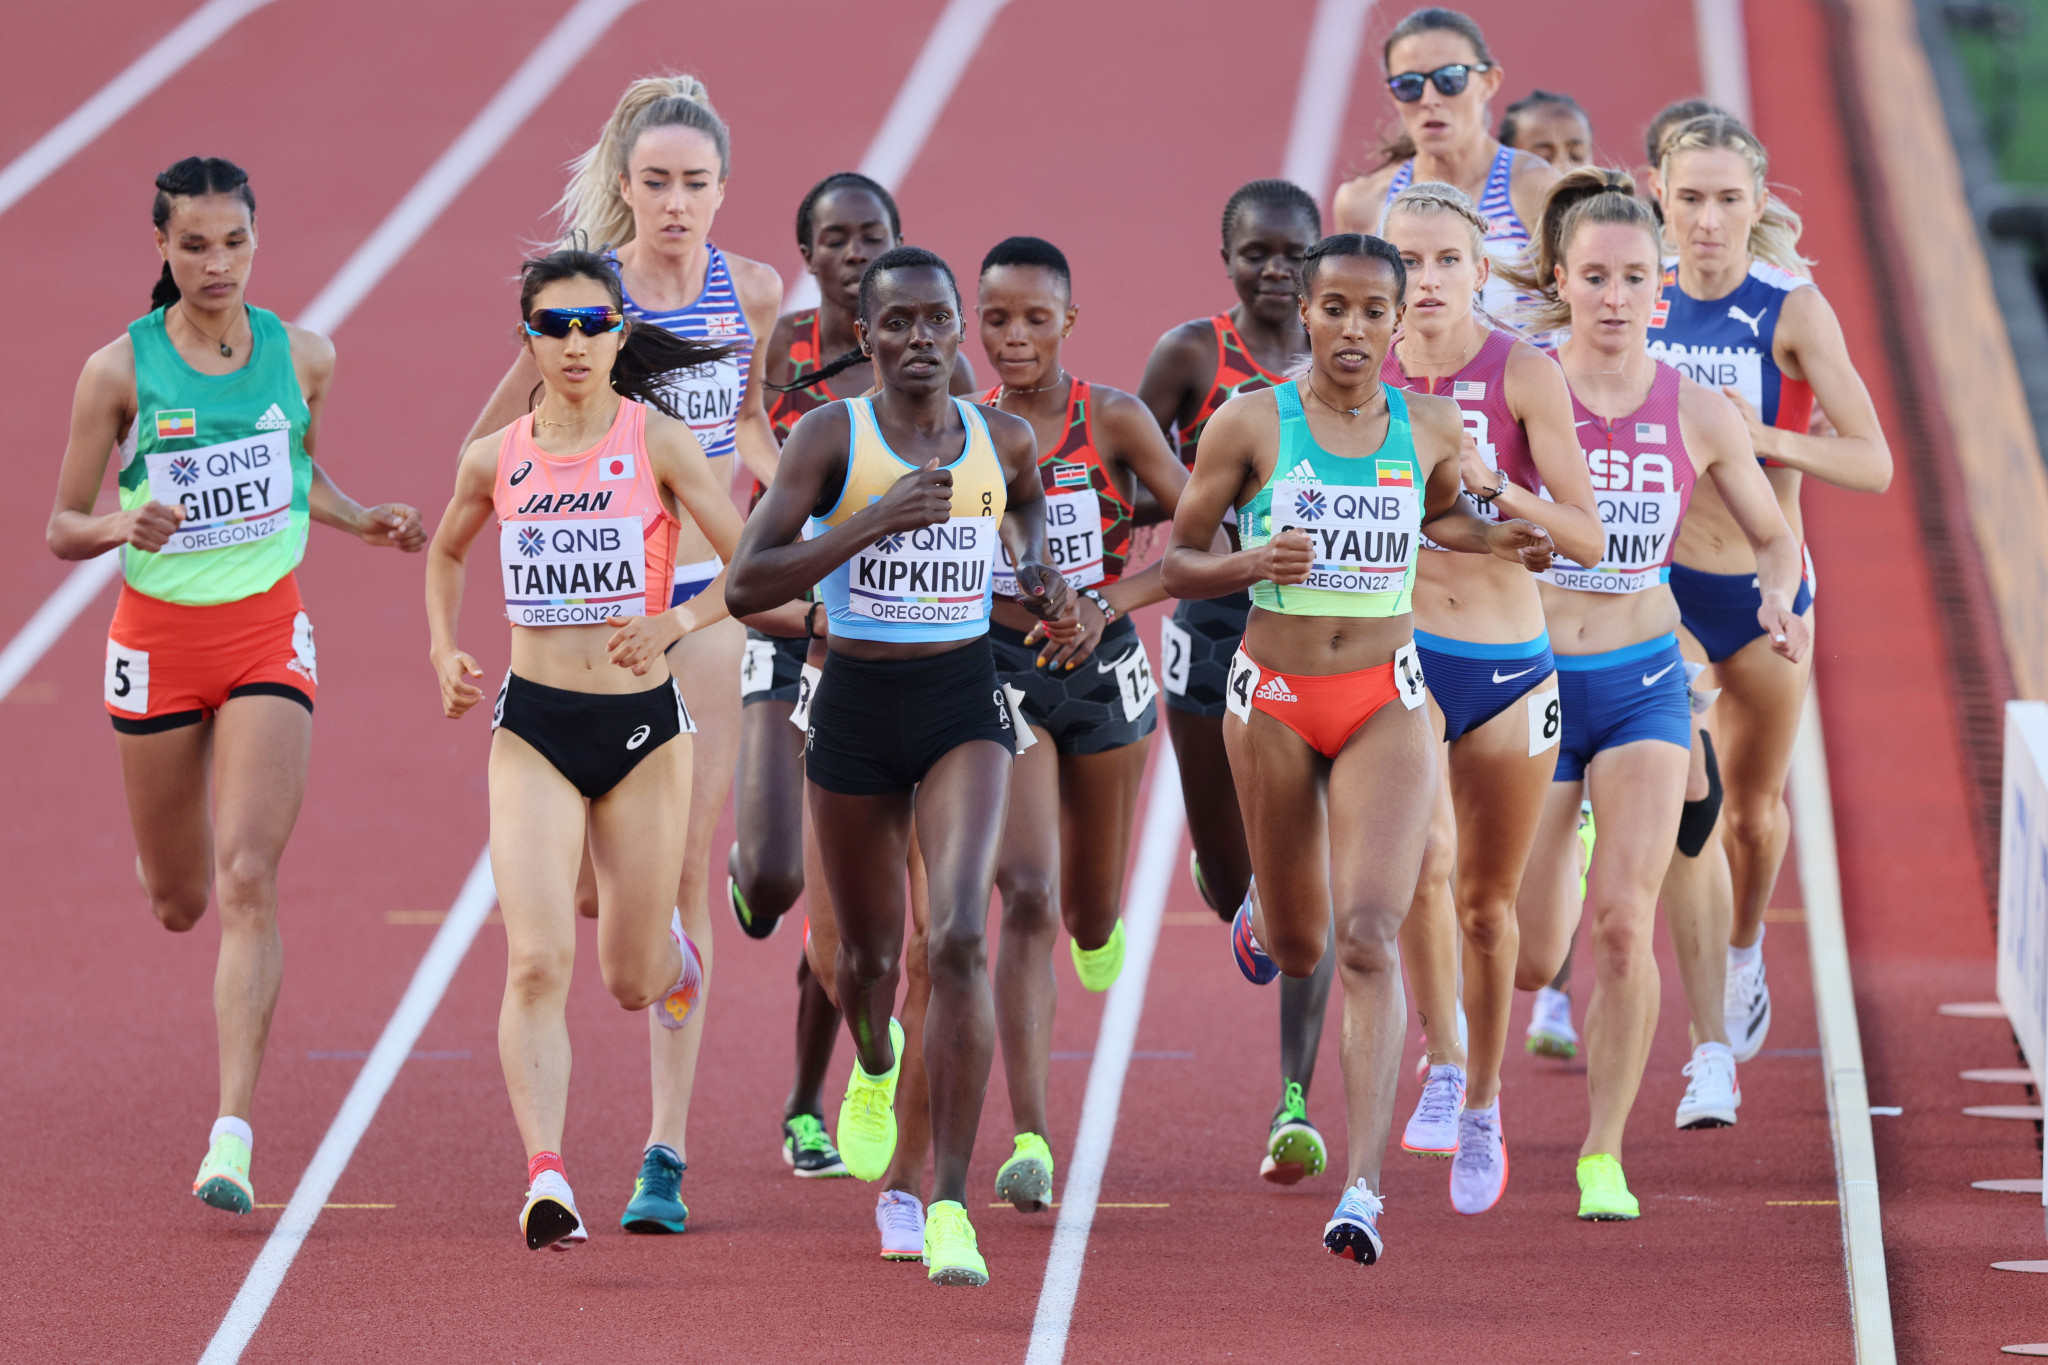 Caroline Chepkoech Kipkirui, centre in yellow bib, claimed the women's 3,000m title ©Getty Images